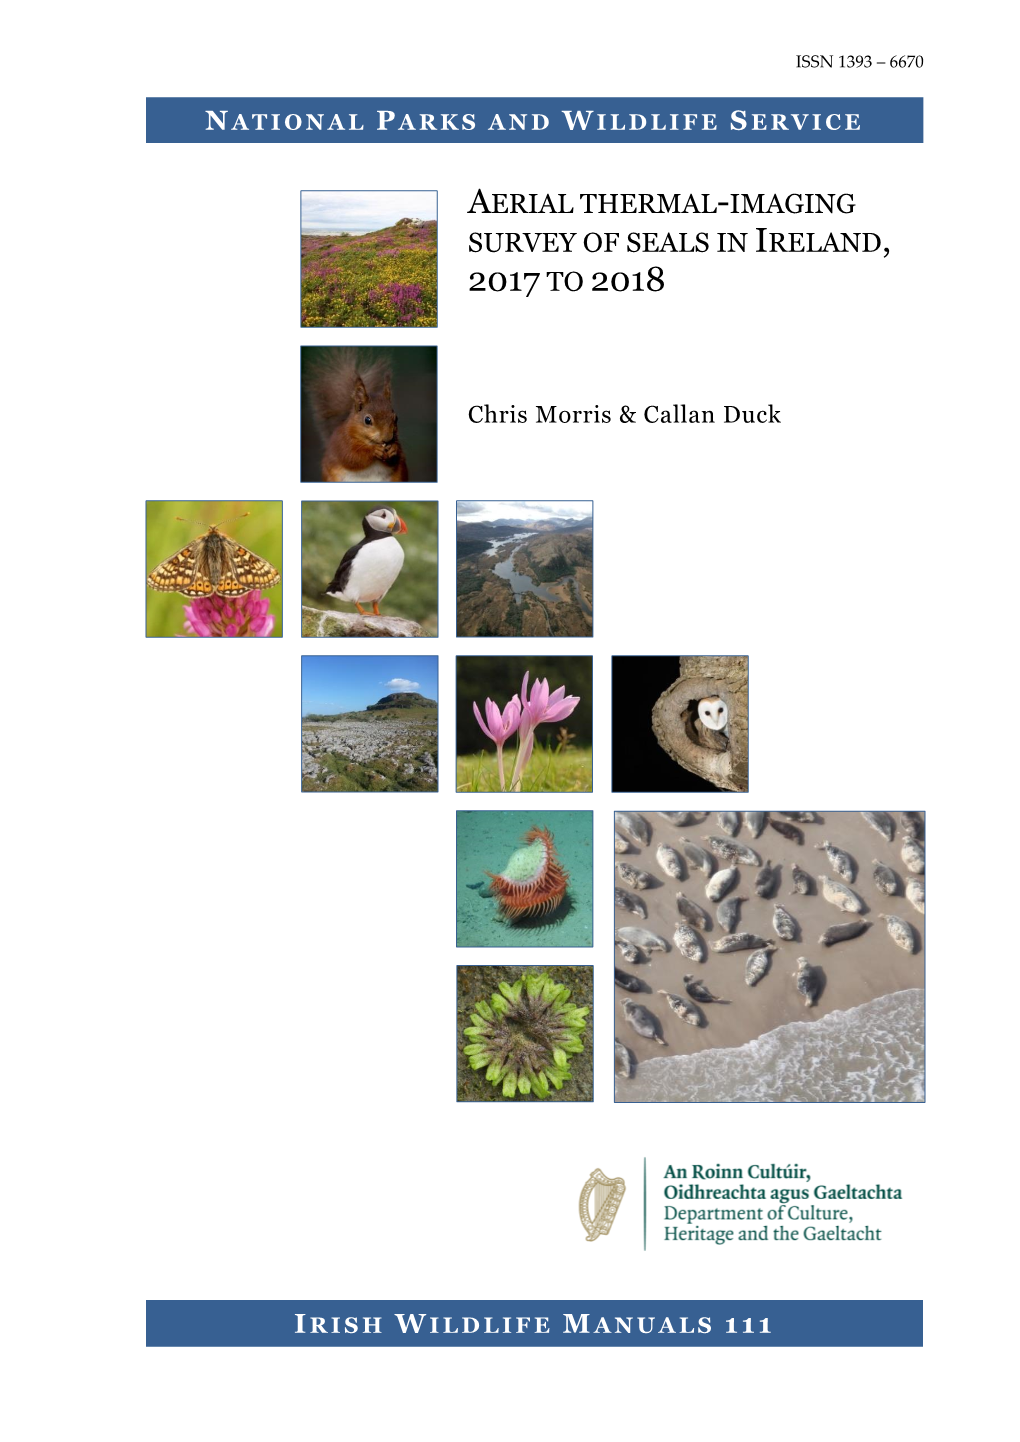 Irish Wildlife Manuals No. 111, Aerial